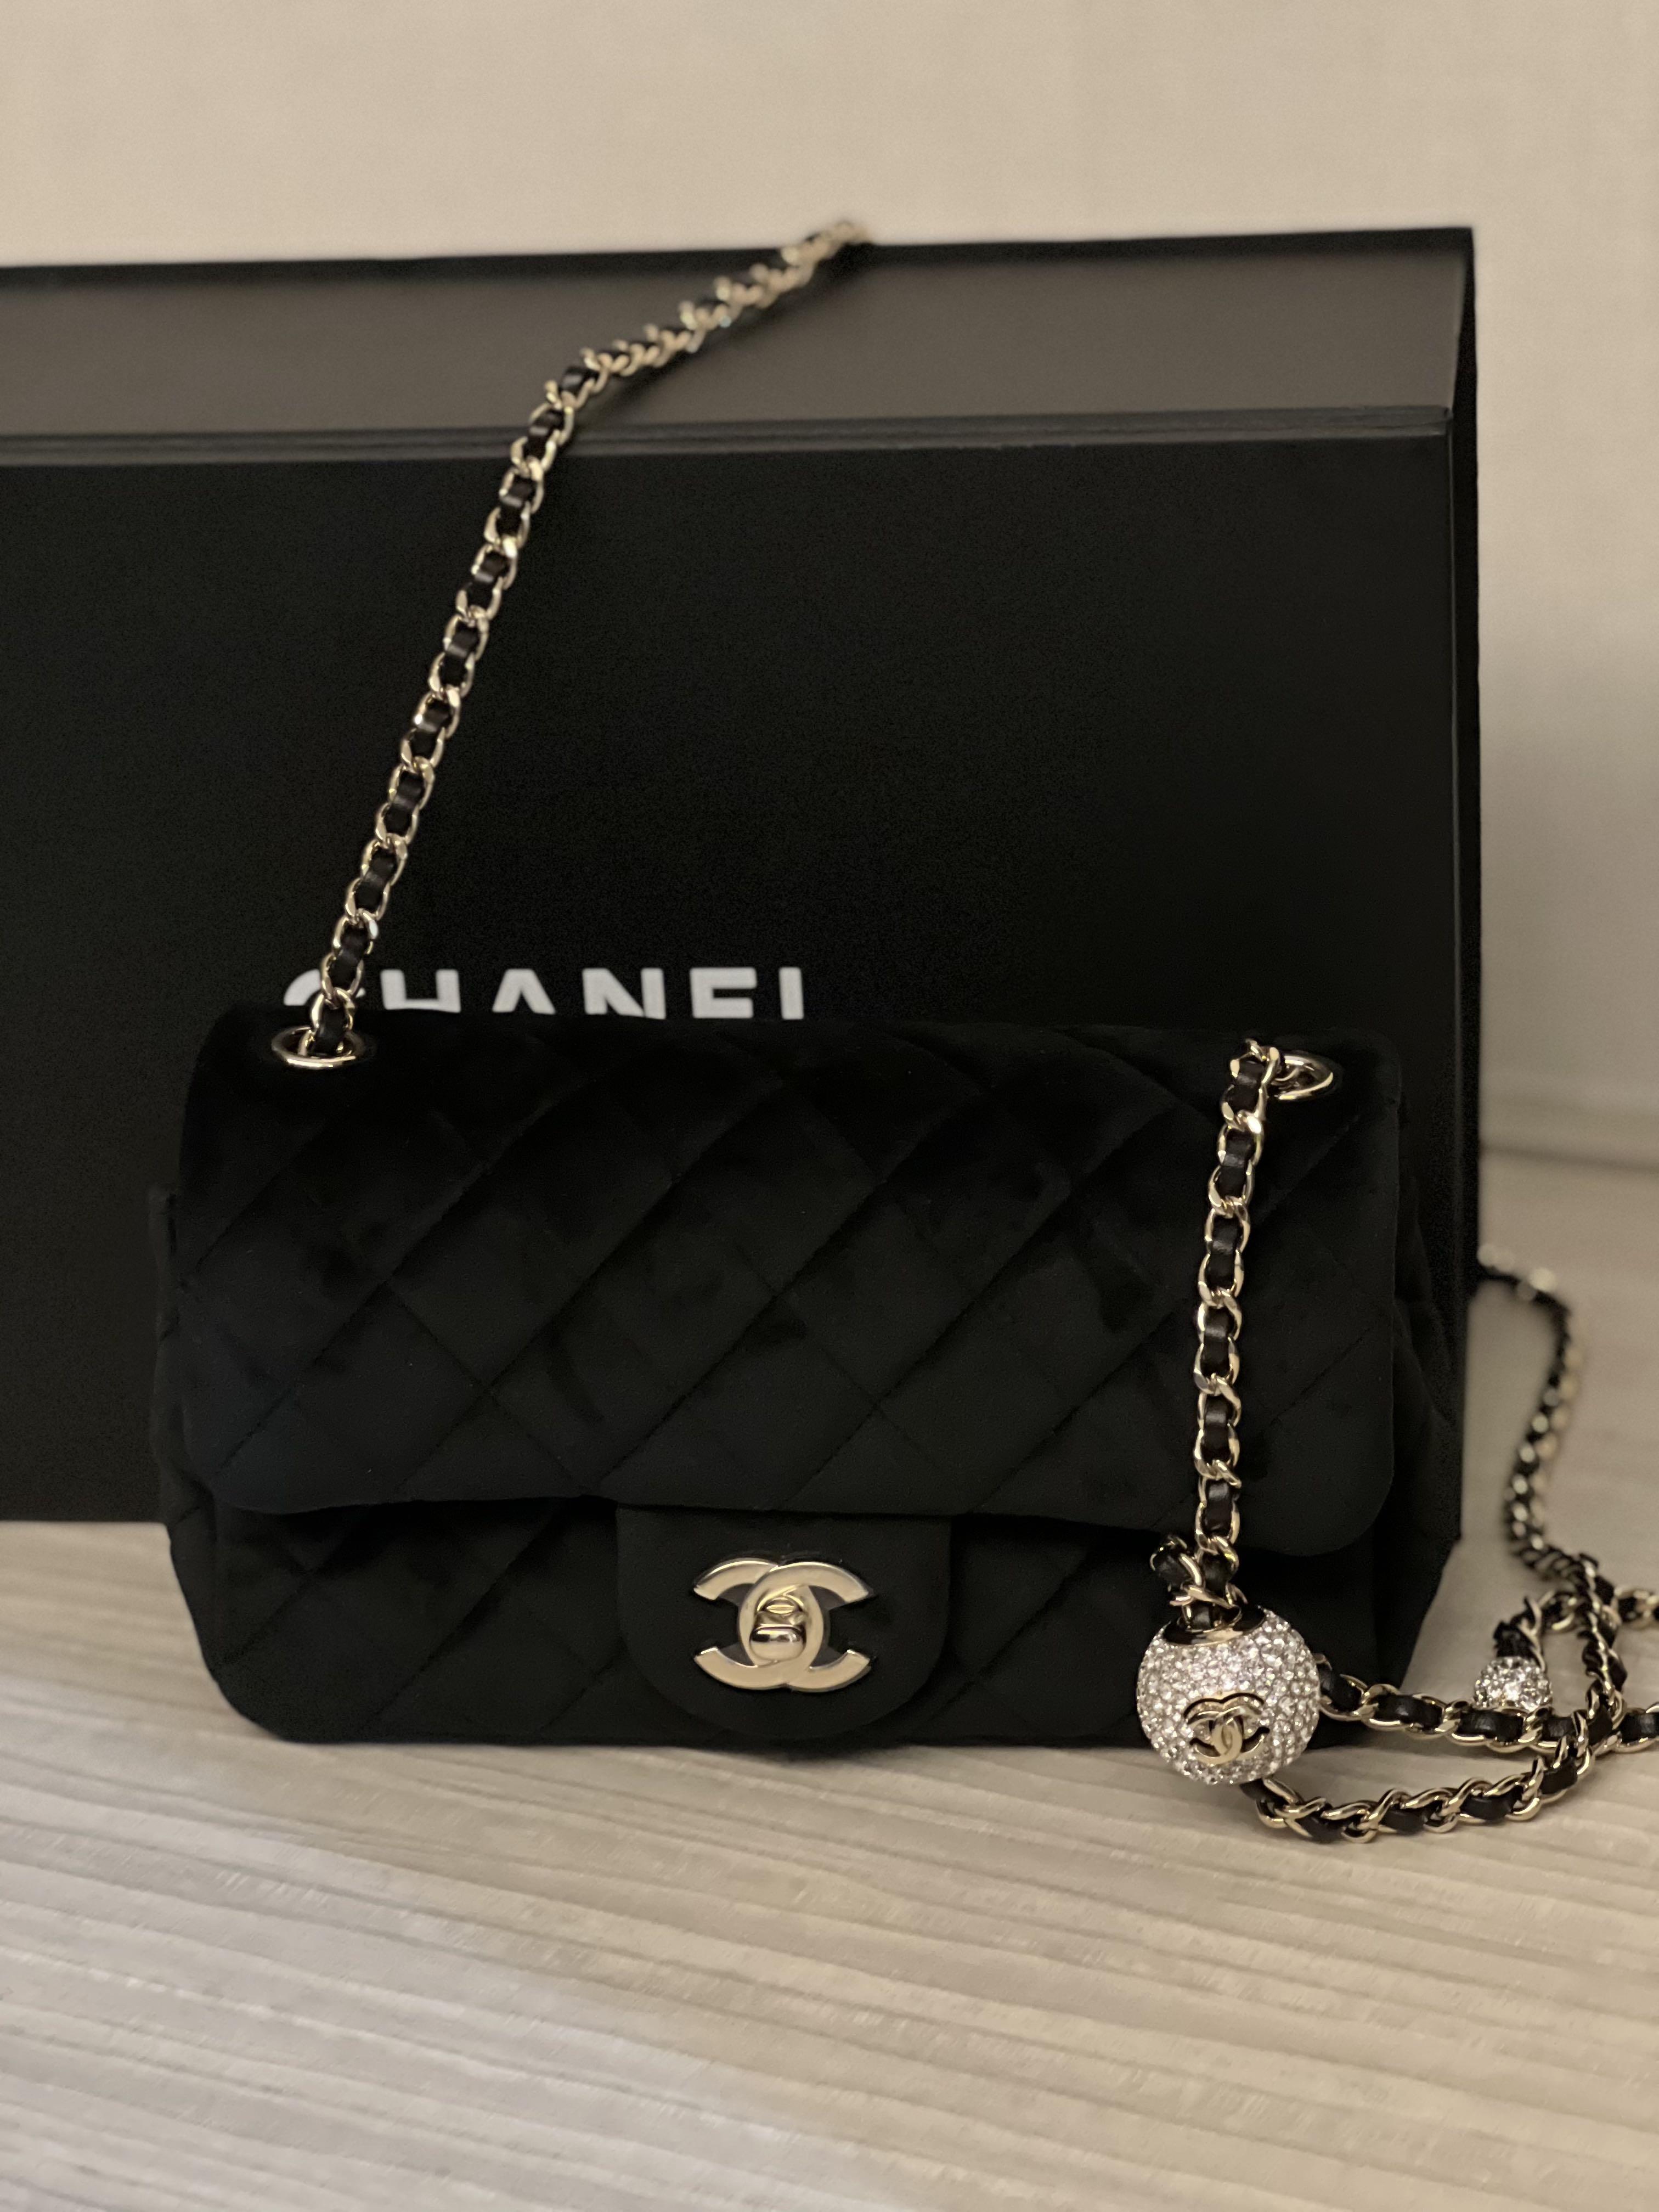 Chanel Flap Bag Pearl Crush (Crystal ball) in black velvet